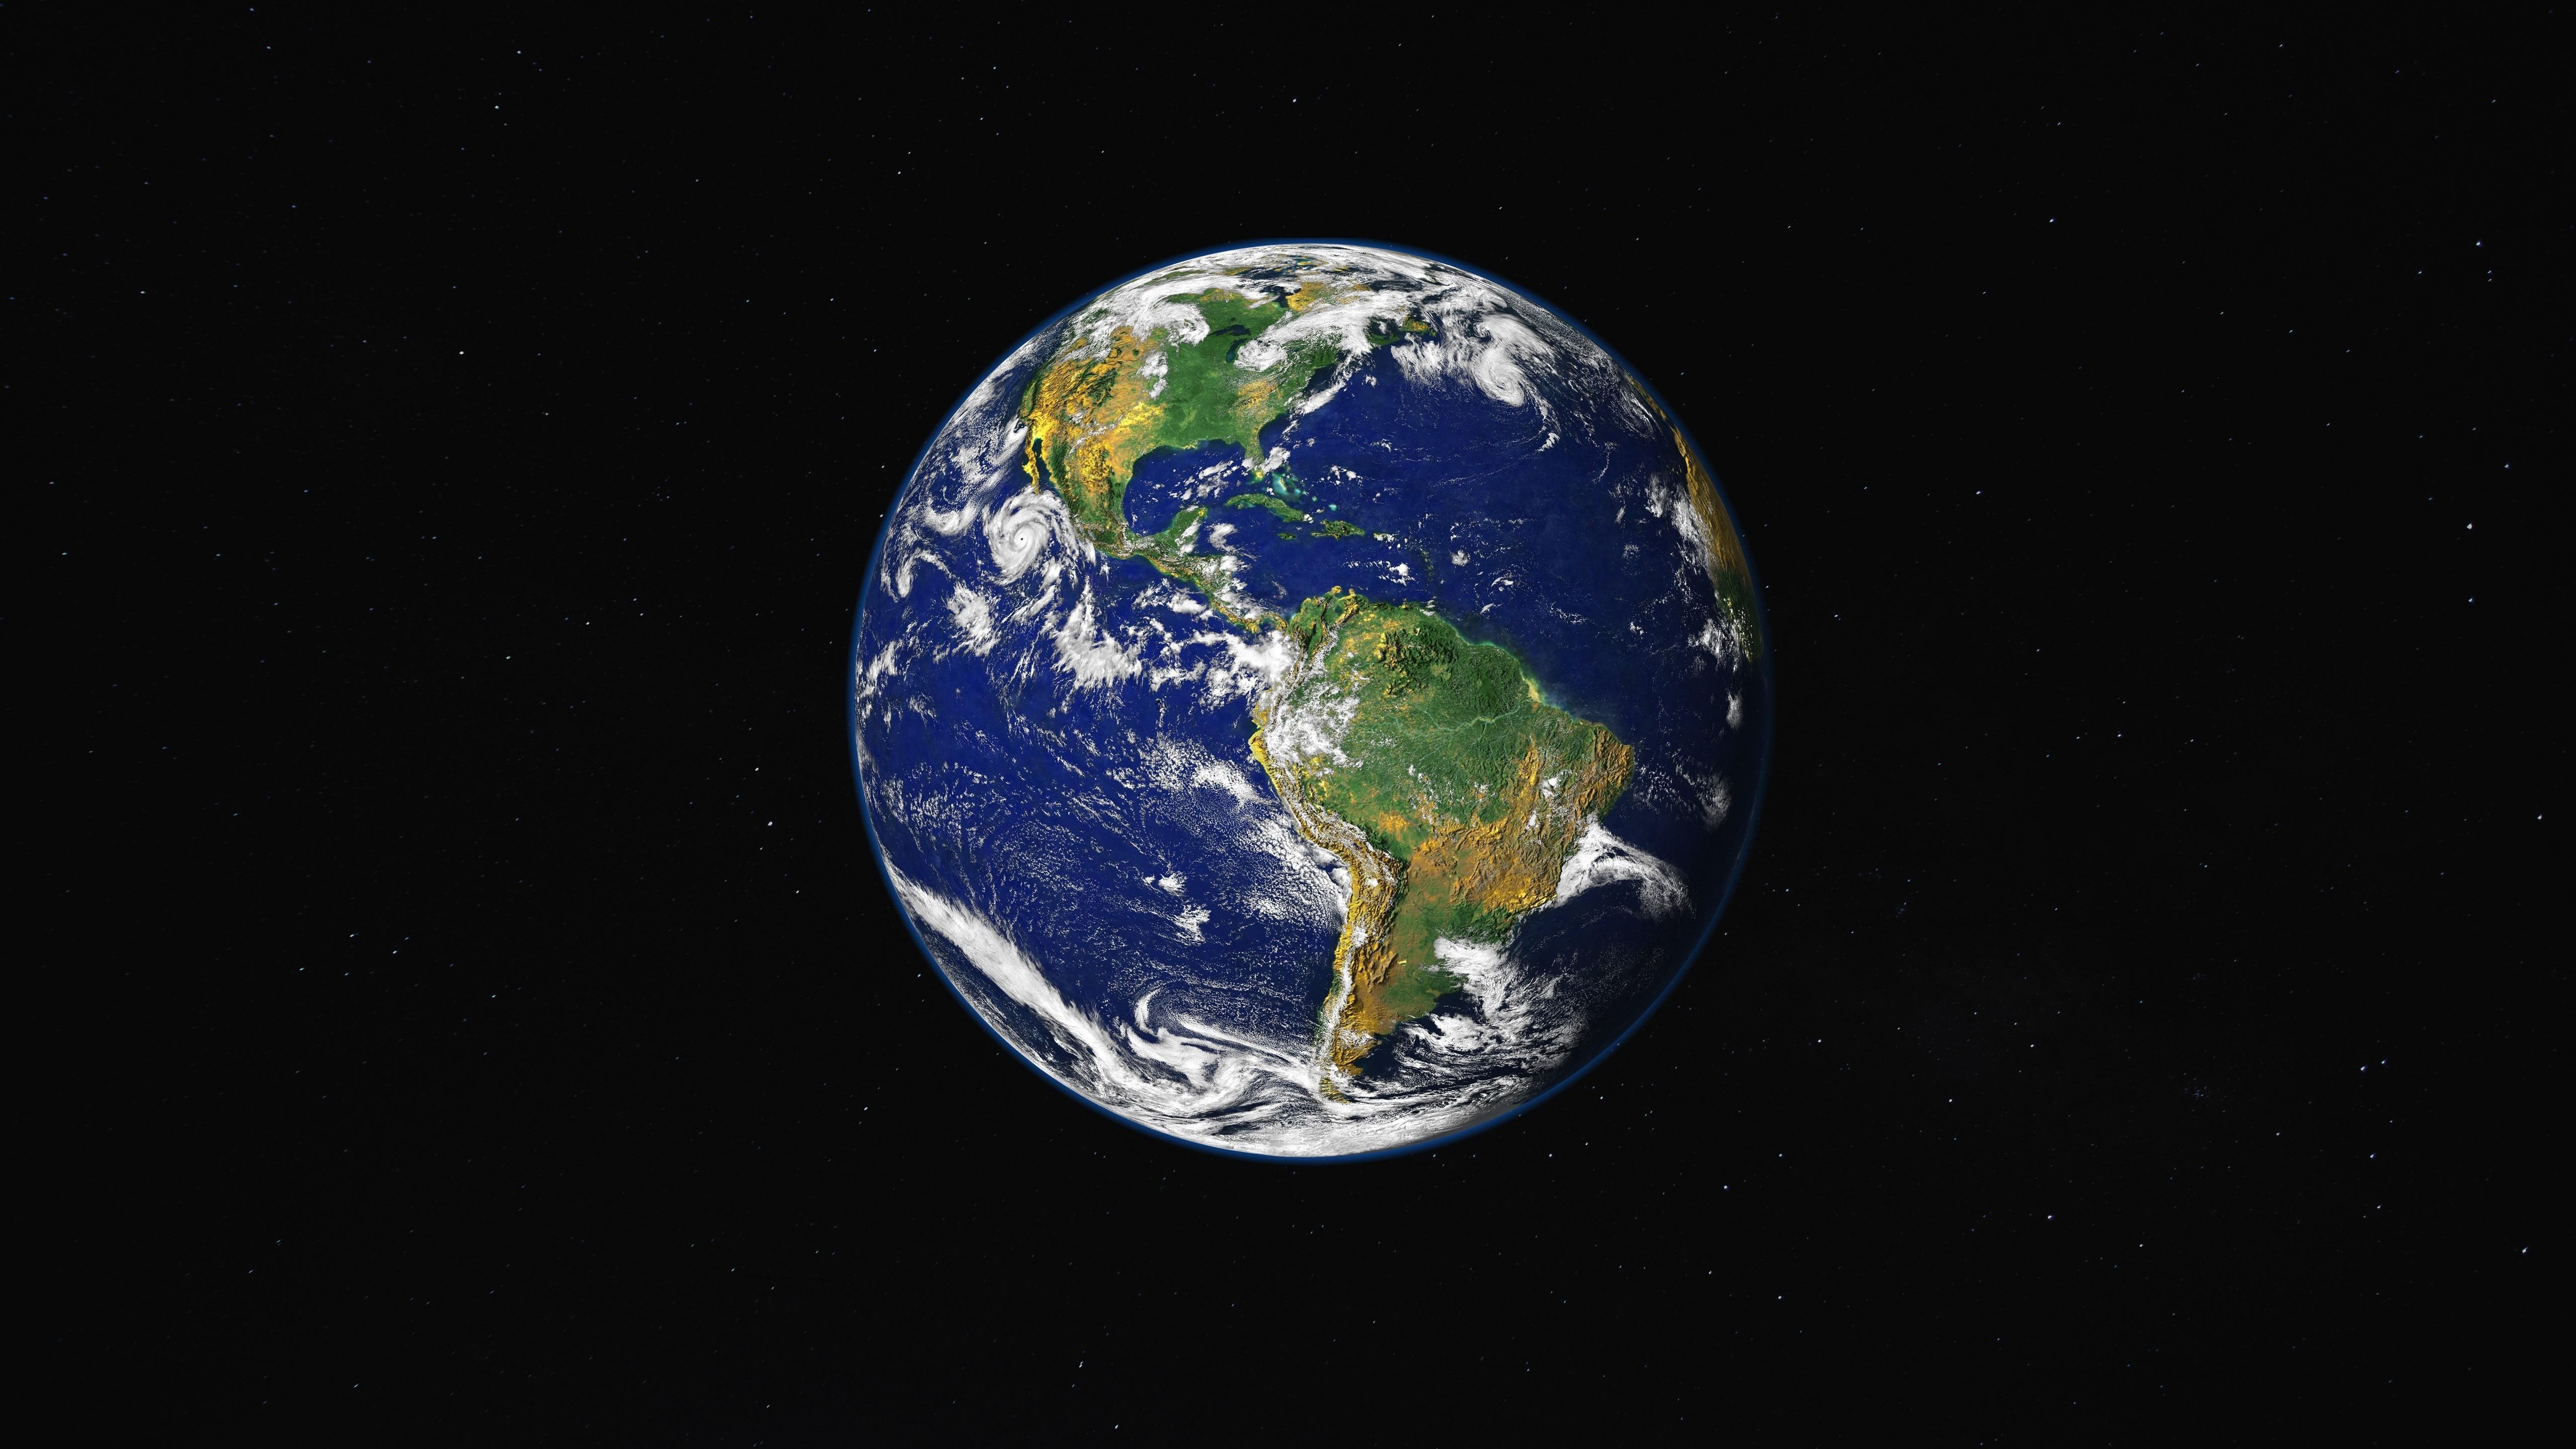  Das Beste Der Welt Hintergrundbild 5120x2880. Schöne Erde, Land, Meer, Weltraum 5120x2880 UHD 5K Hintergrundbilder, HD, Bild